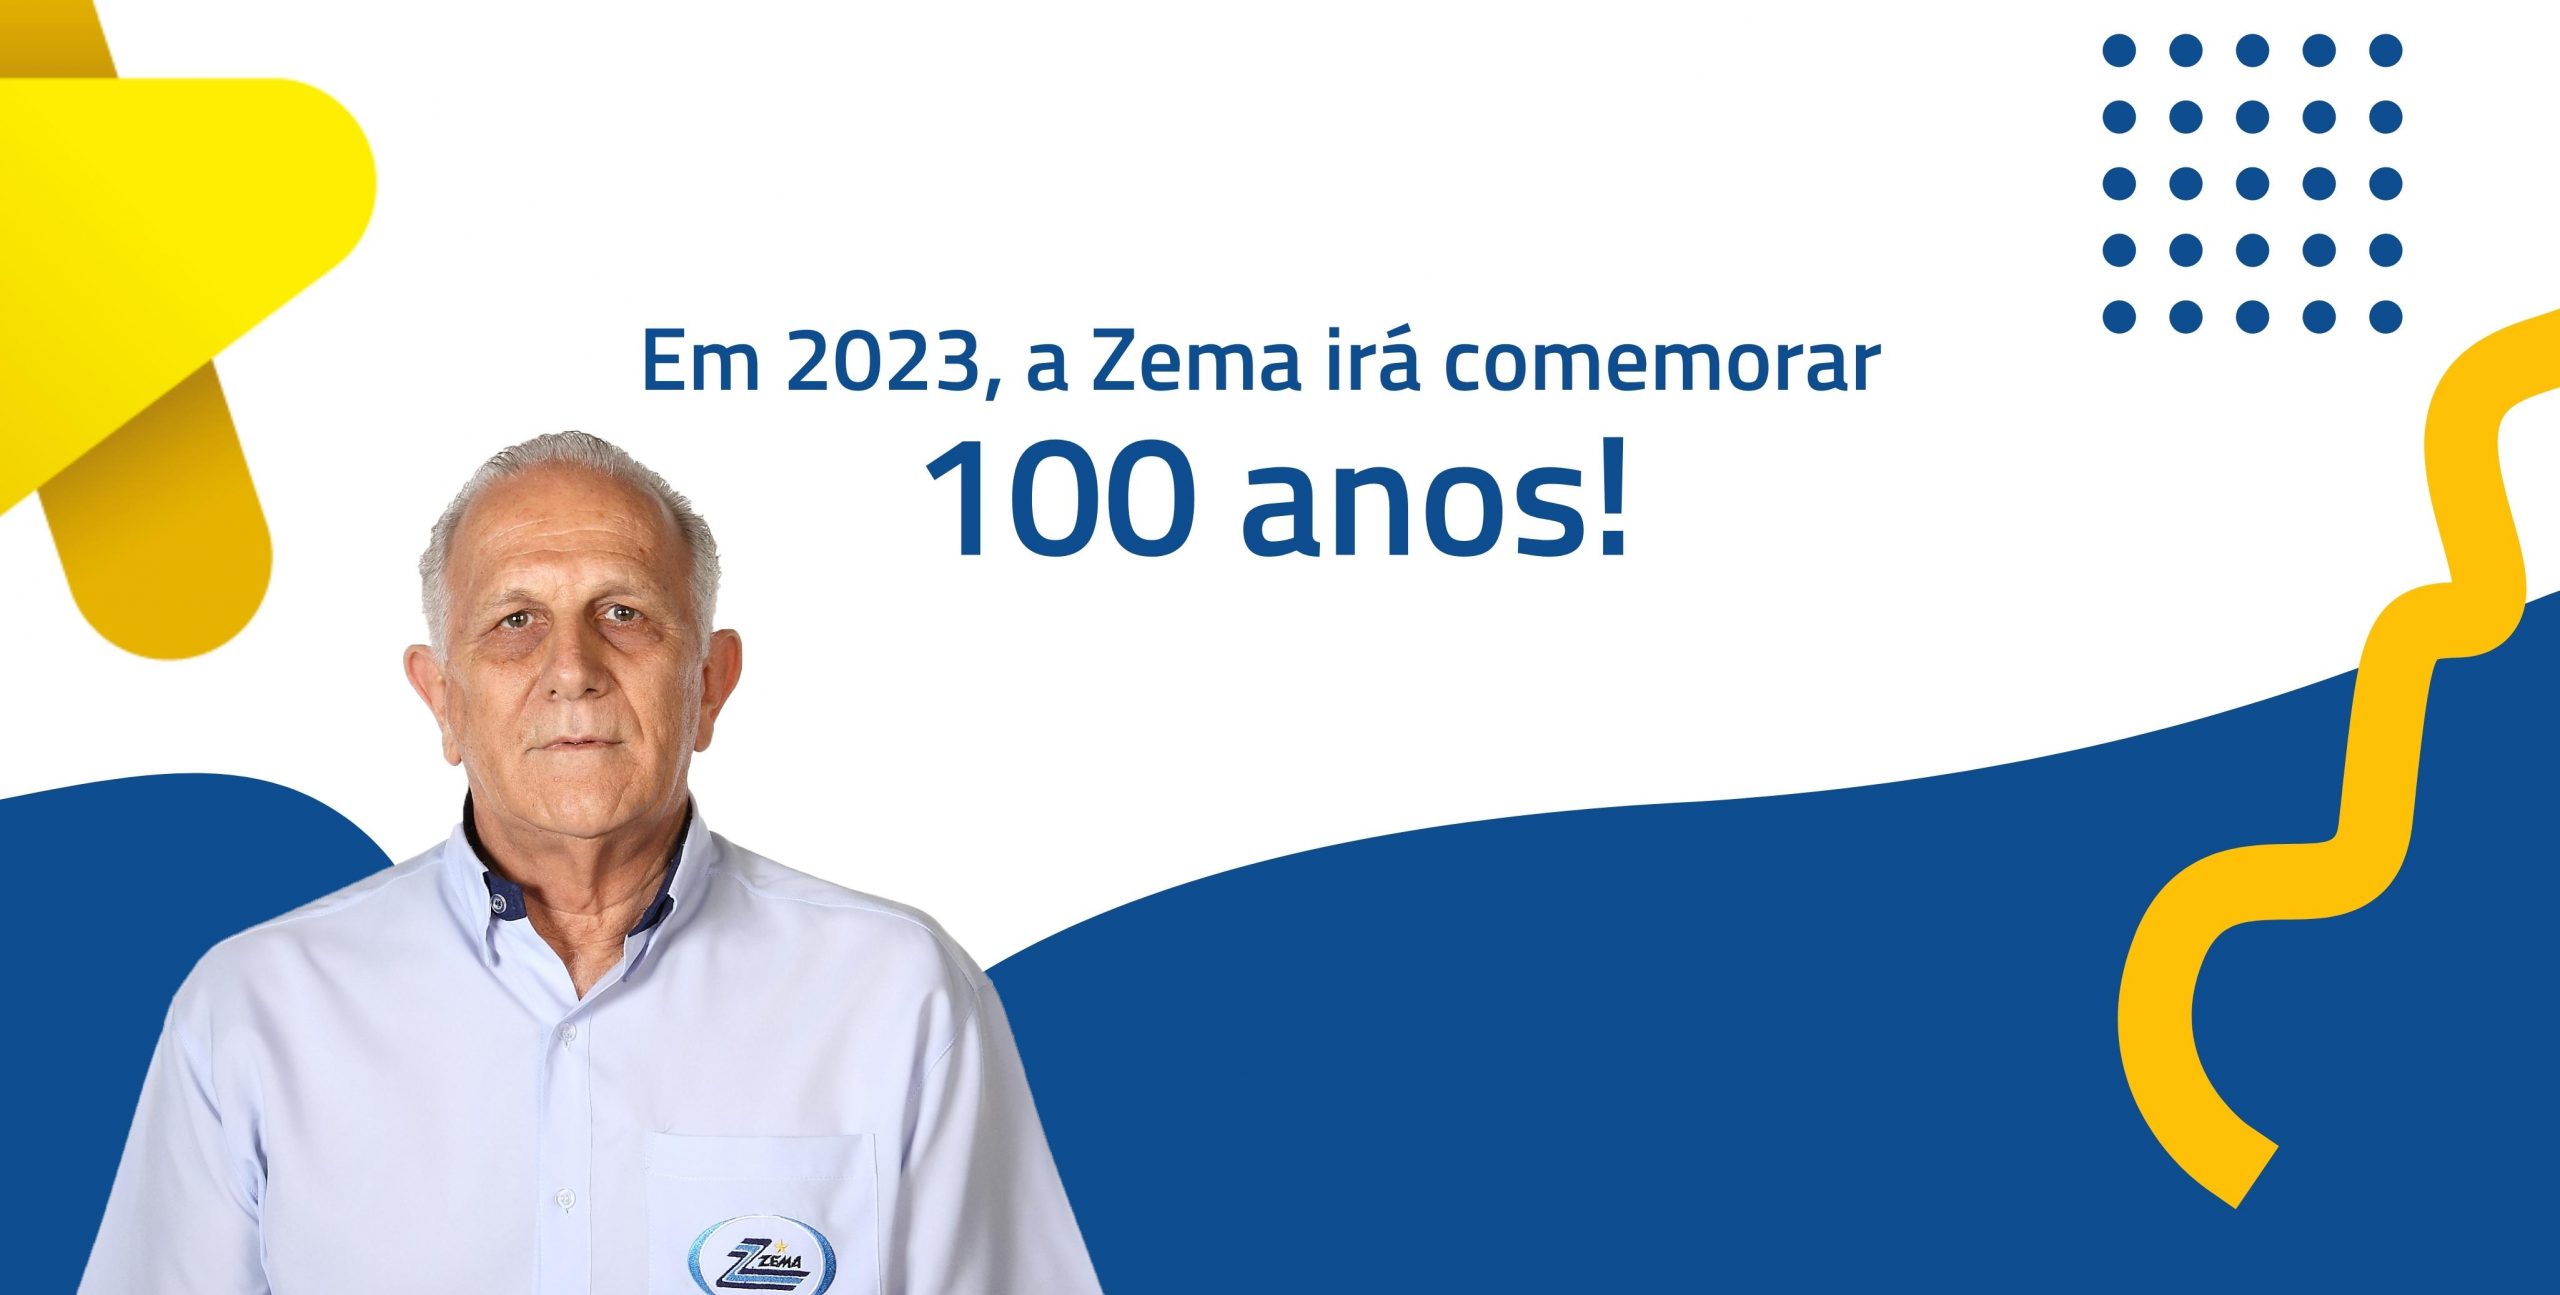 Em 2023 a Zema irá comemorar 100 anos de empresa